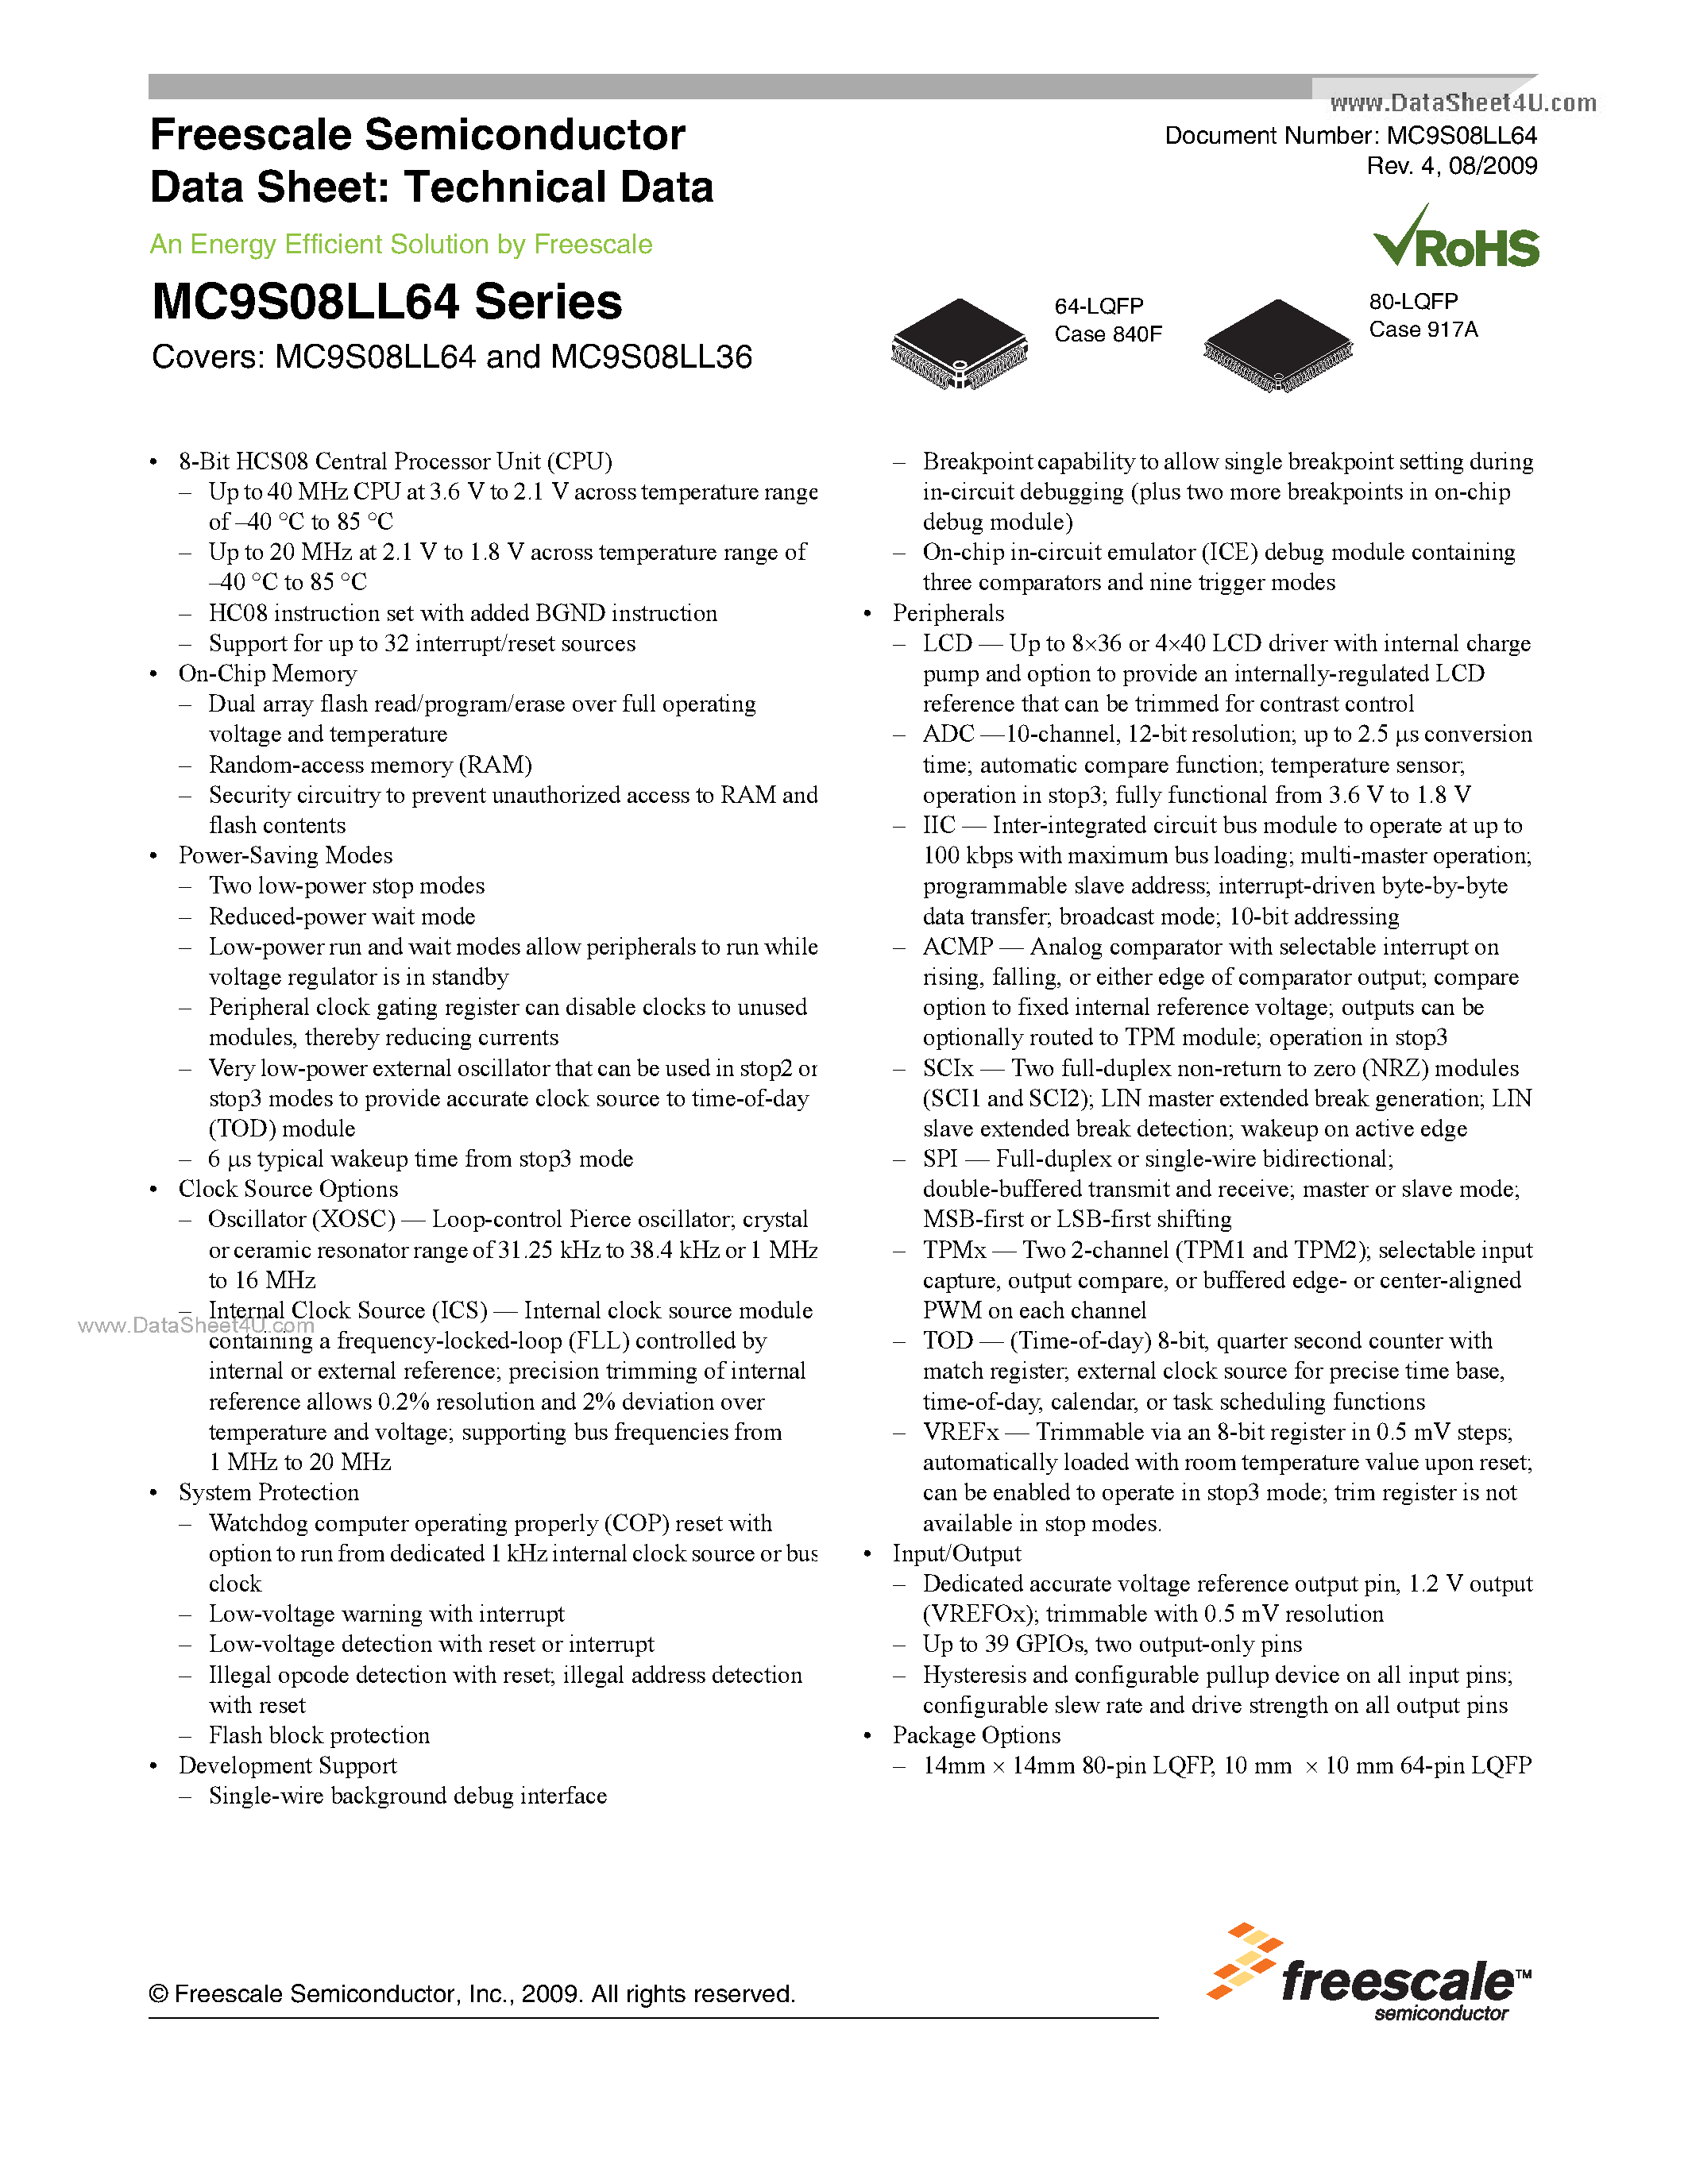 Даташит MC9S08LL36 - (MC9S08LL36 / MC9S08LL64) 8-Bit HCS08 Central Processor Unit страница 1